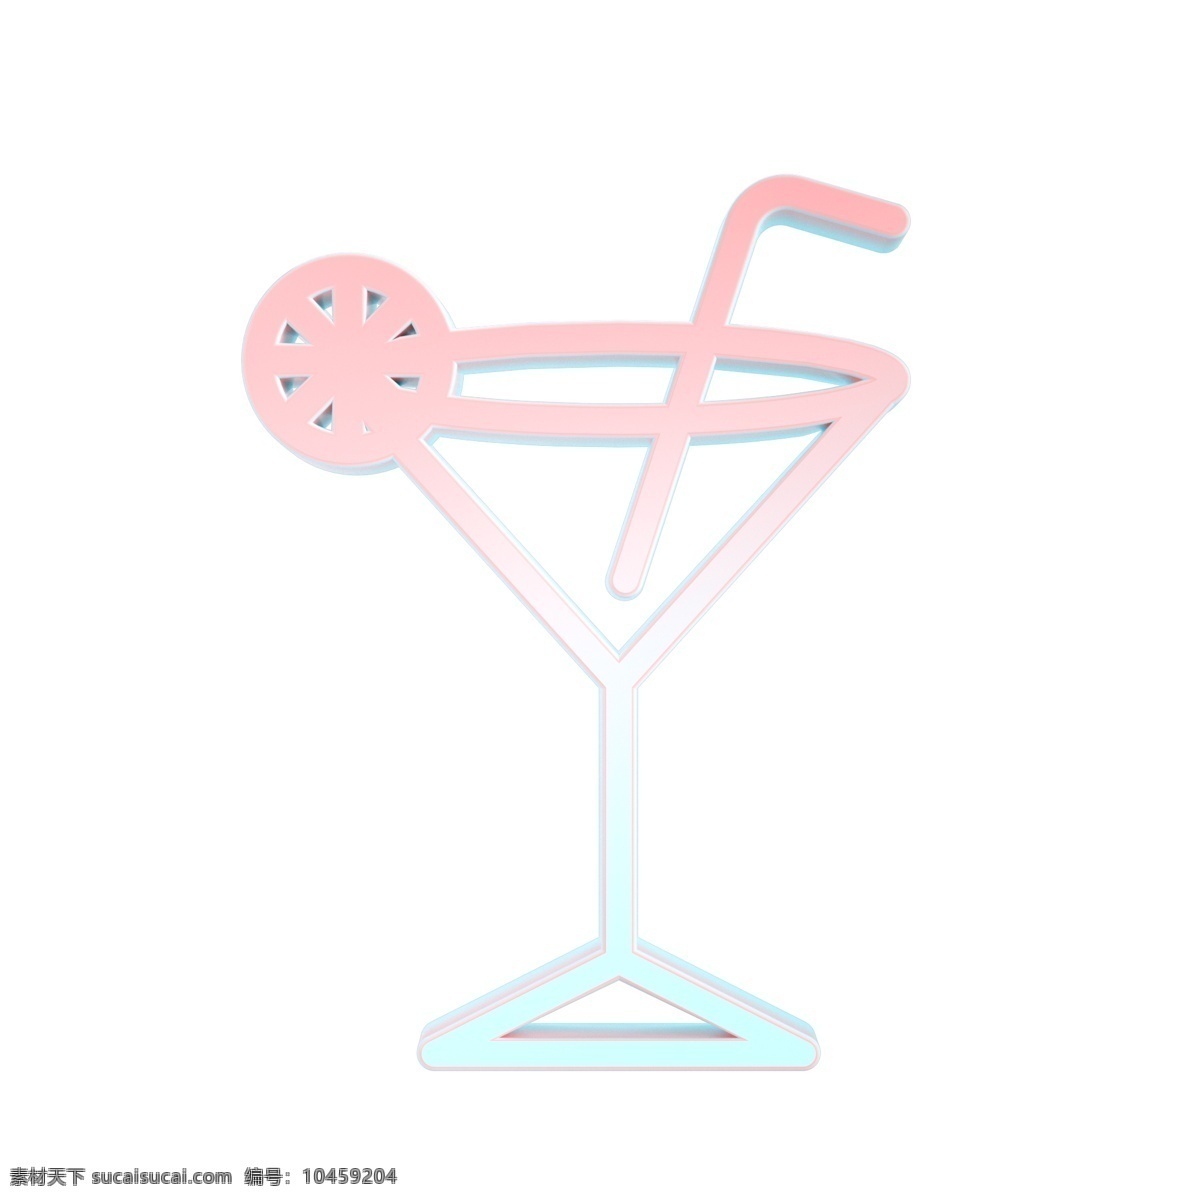 夏日冰饮图标 马卡龙色系 夏季常用图标 立体 青粉色